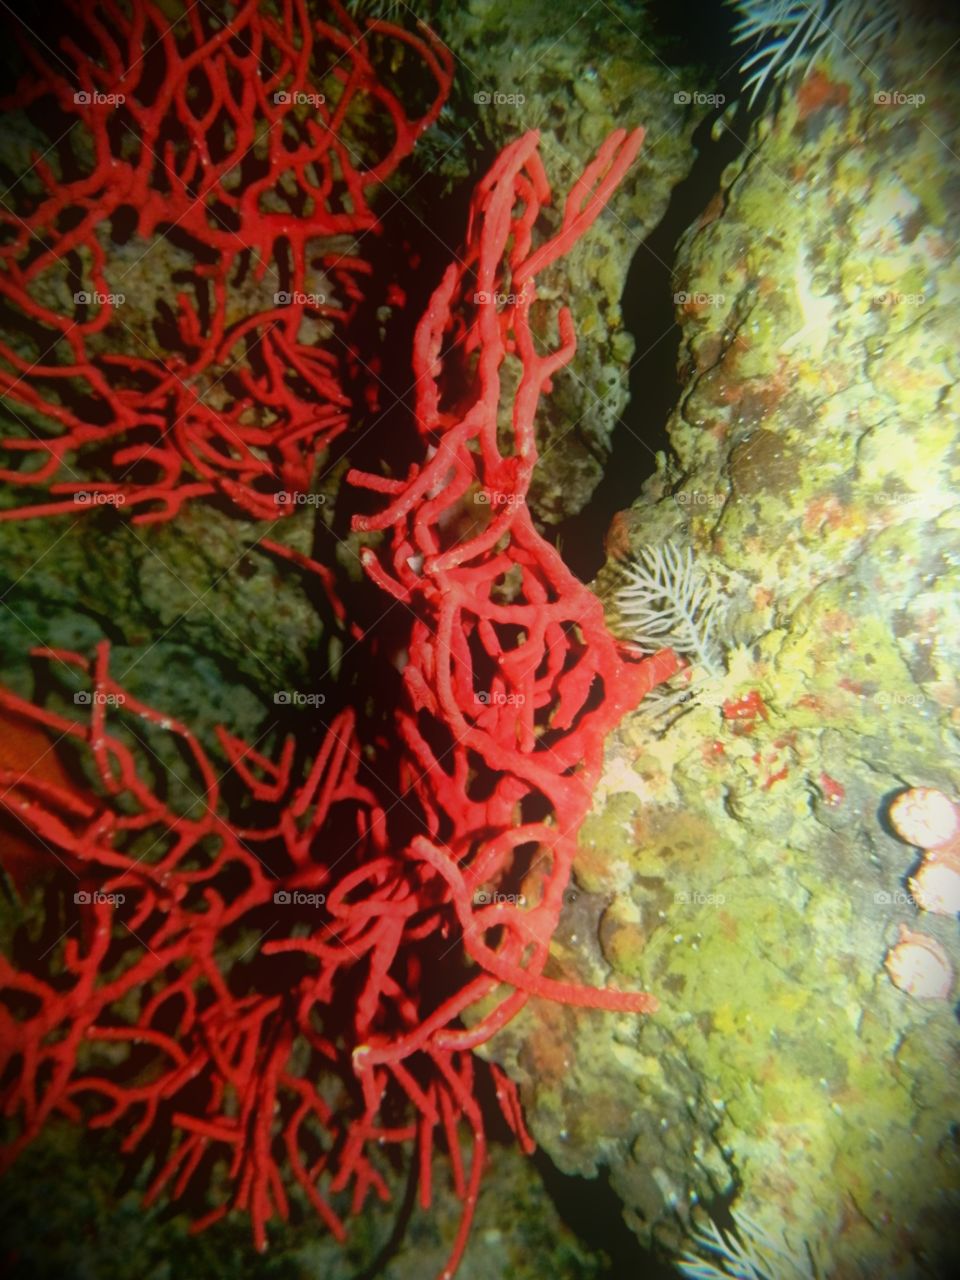 coral coral. National Aquarium in Baltimore 